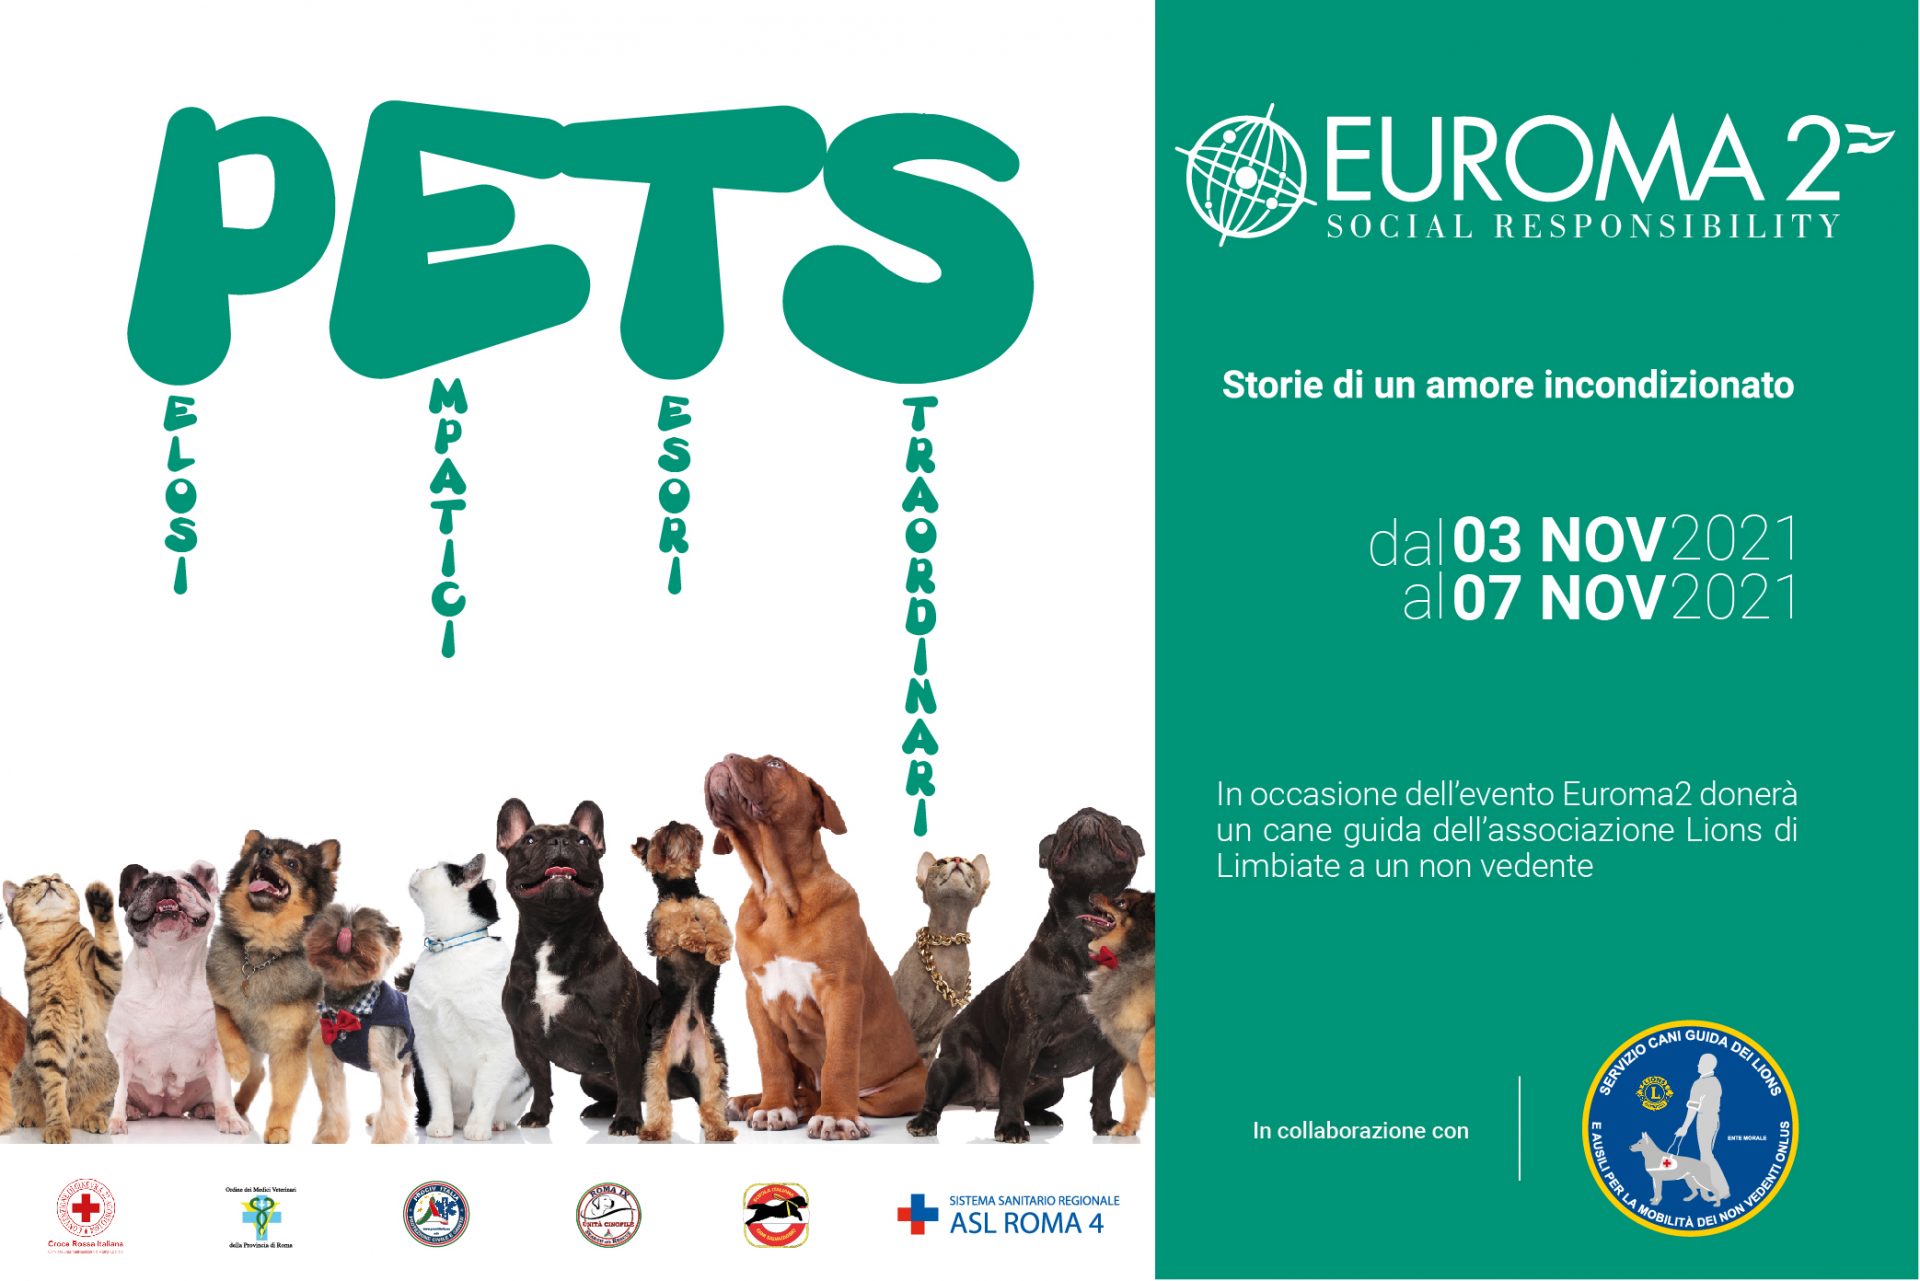 EUROMA2 ospita l’evento “PETS” dal 3 al 7 NOVEMBRE